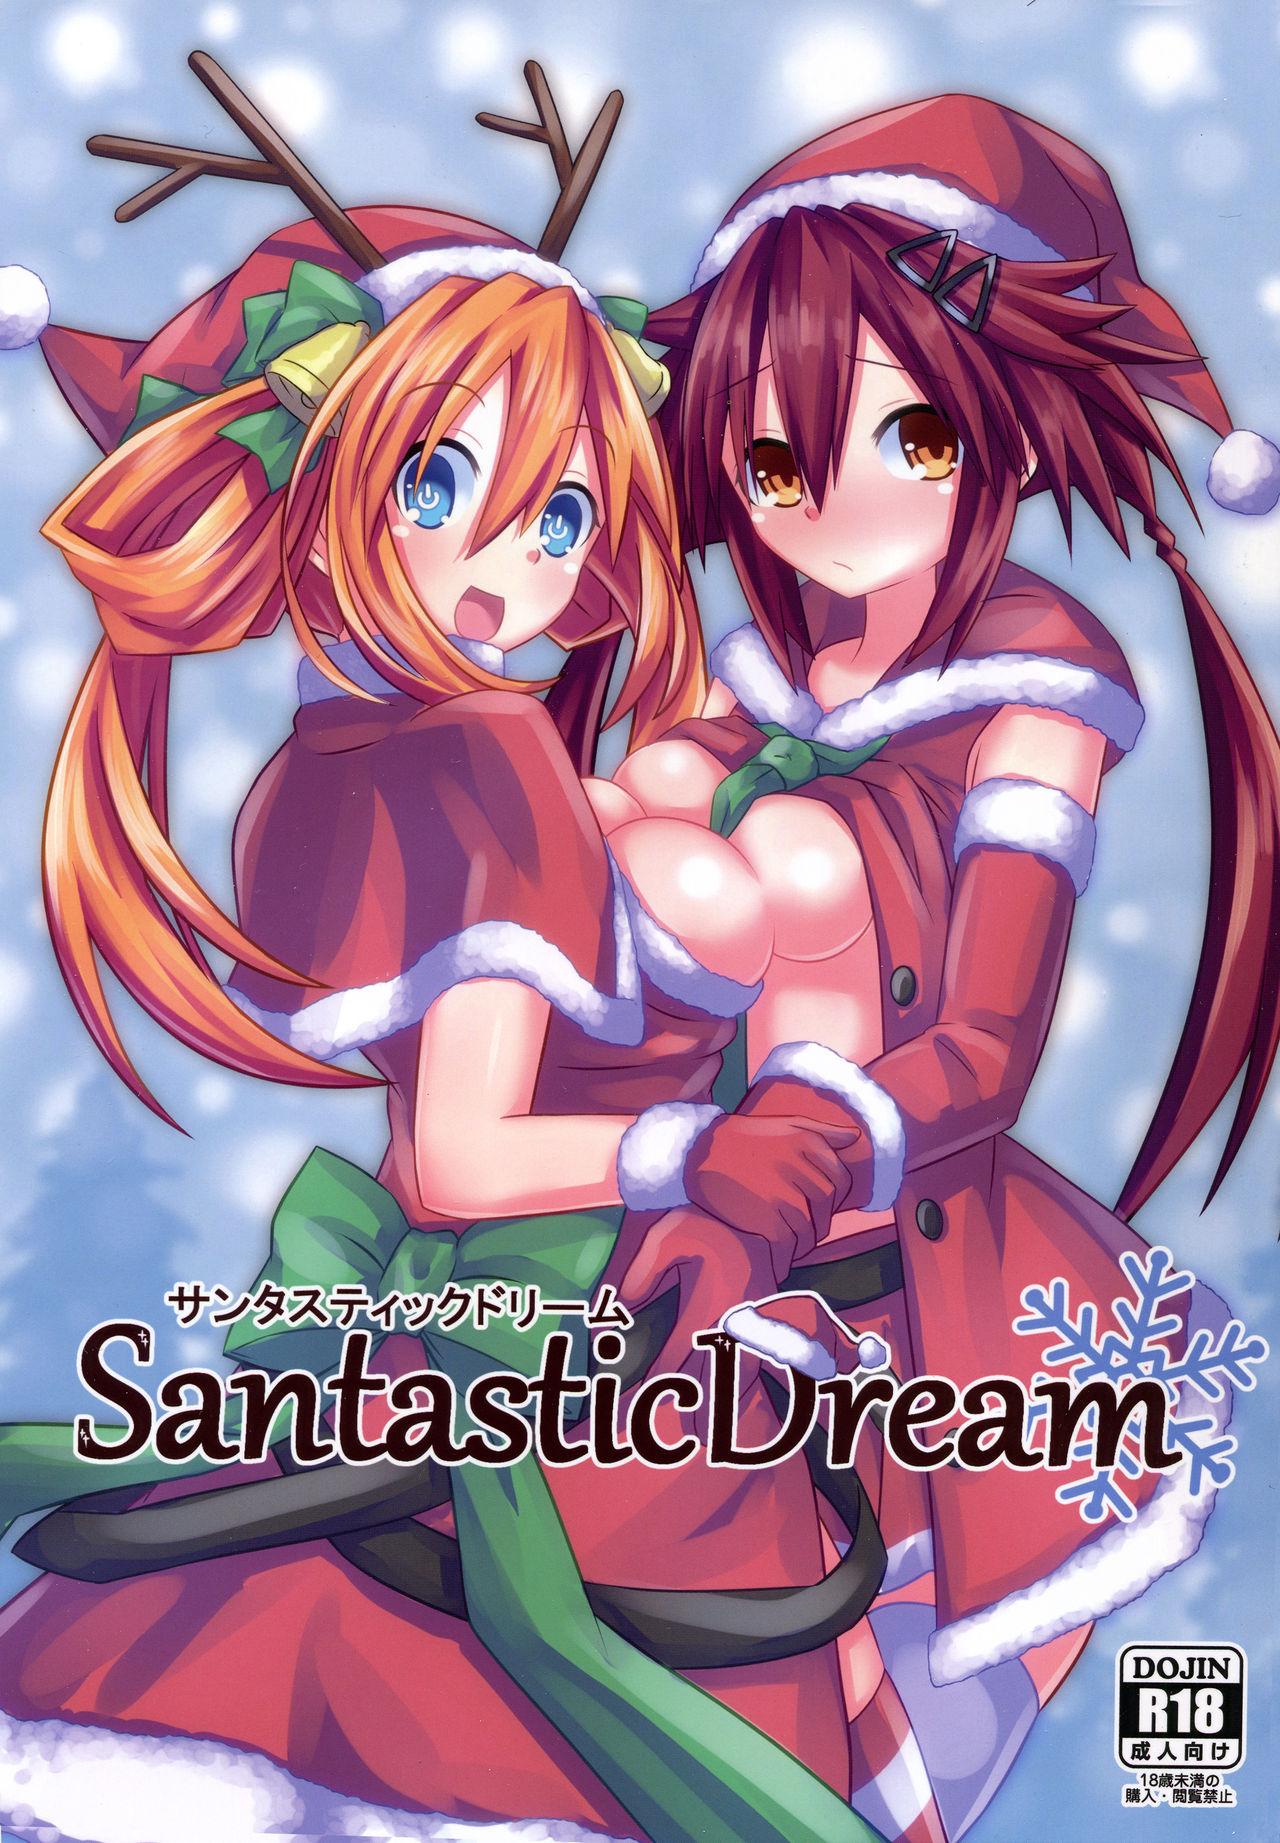 Santastic Dream 0